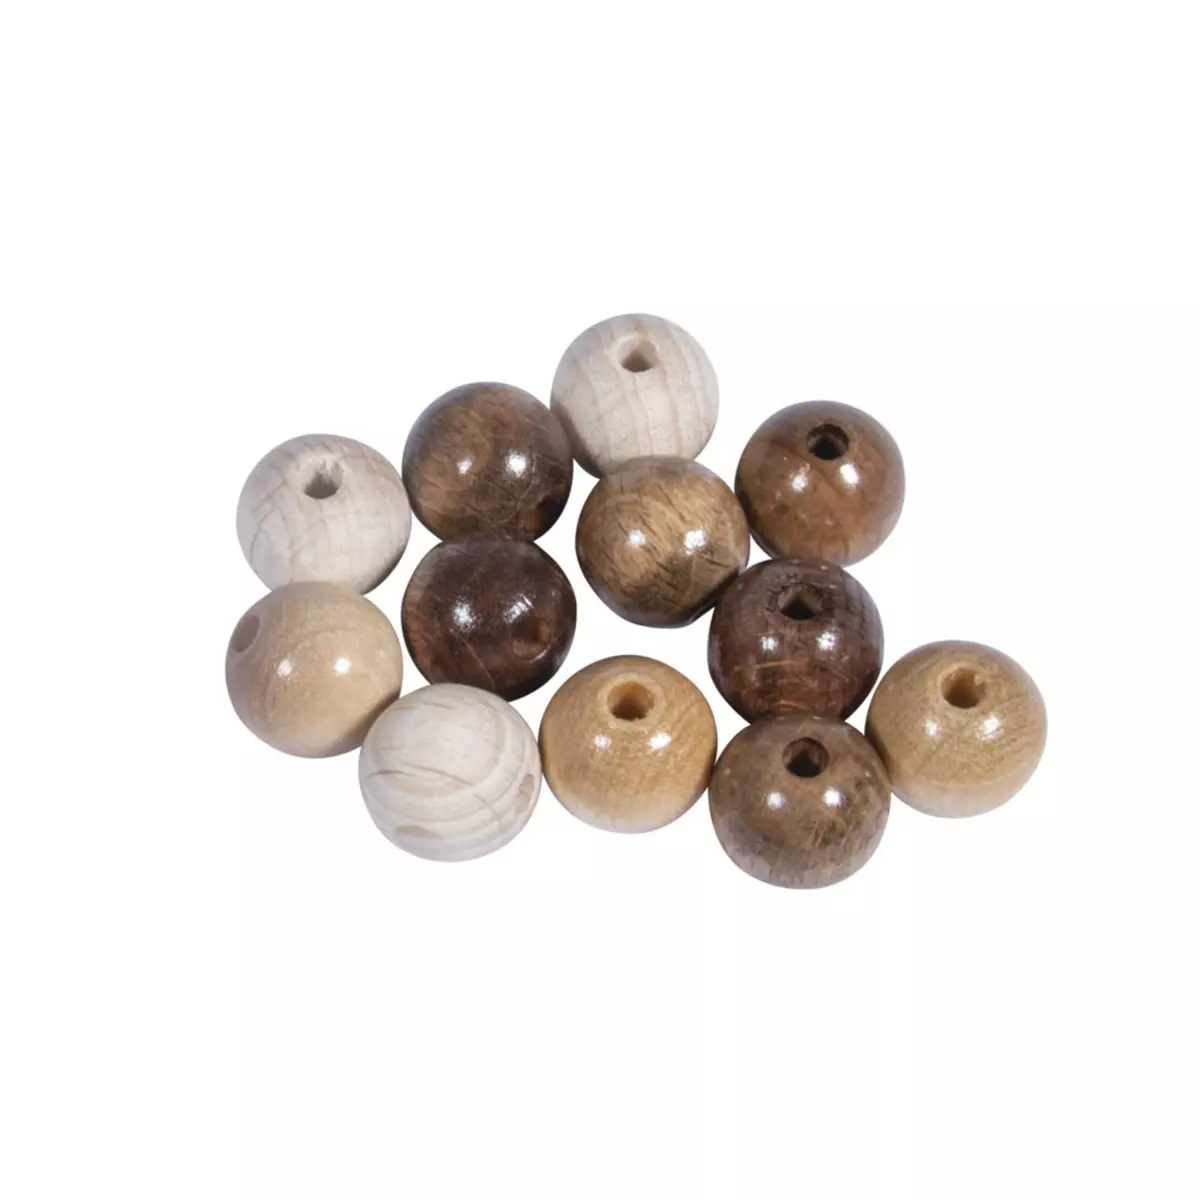 Rayher Assort. perles en bois FSC 100%, 12mm ø, tons naturels, polies, 32 pces